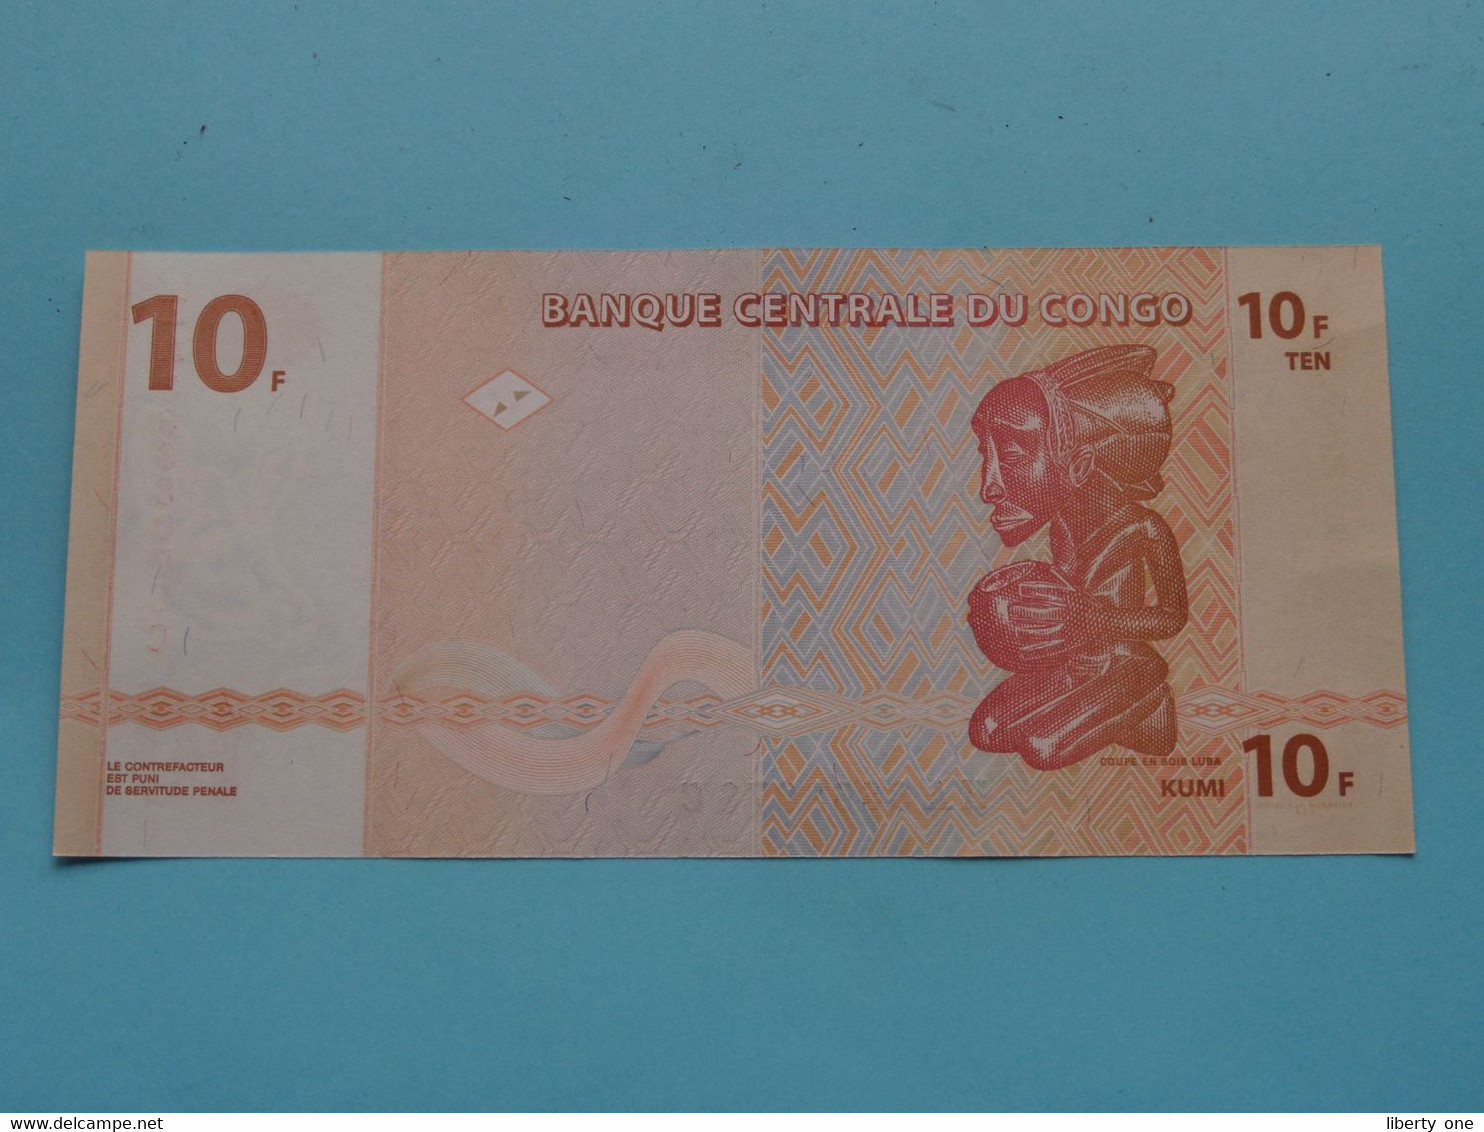 10 ( Dix ) Francs ( HA3668076C ) 2003 > Banque Centrale Du CONGO ( For Grade, Please See Photo ) UNC ! - Repubblica Del Congo (Congo-Brazzaville)